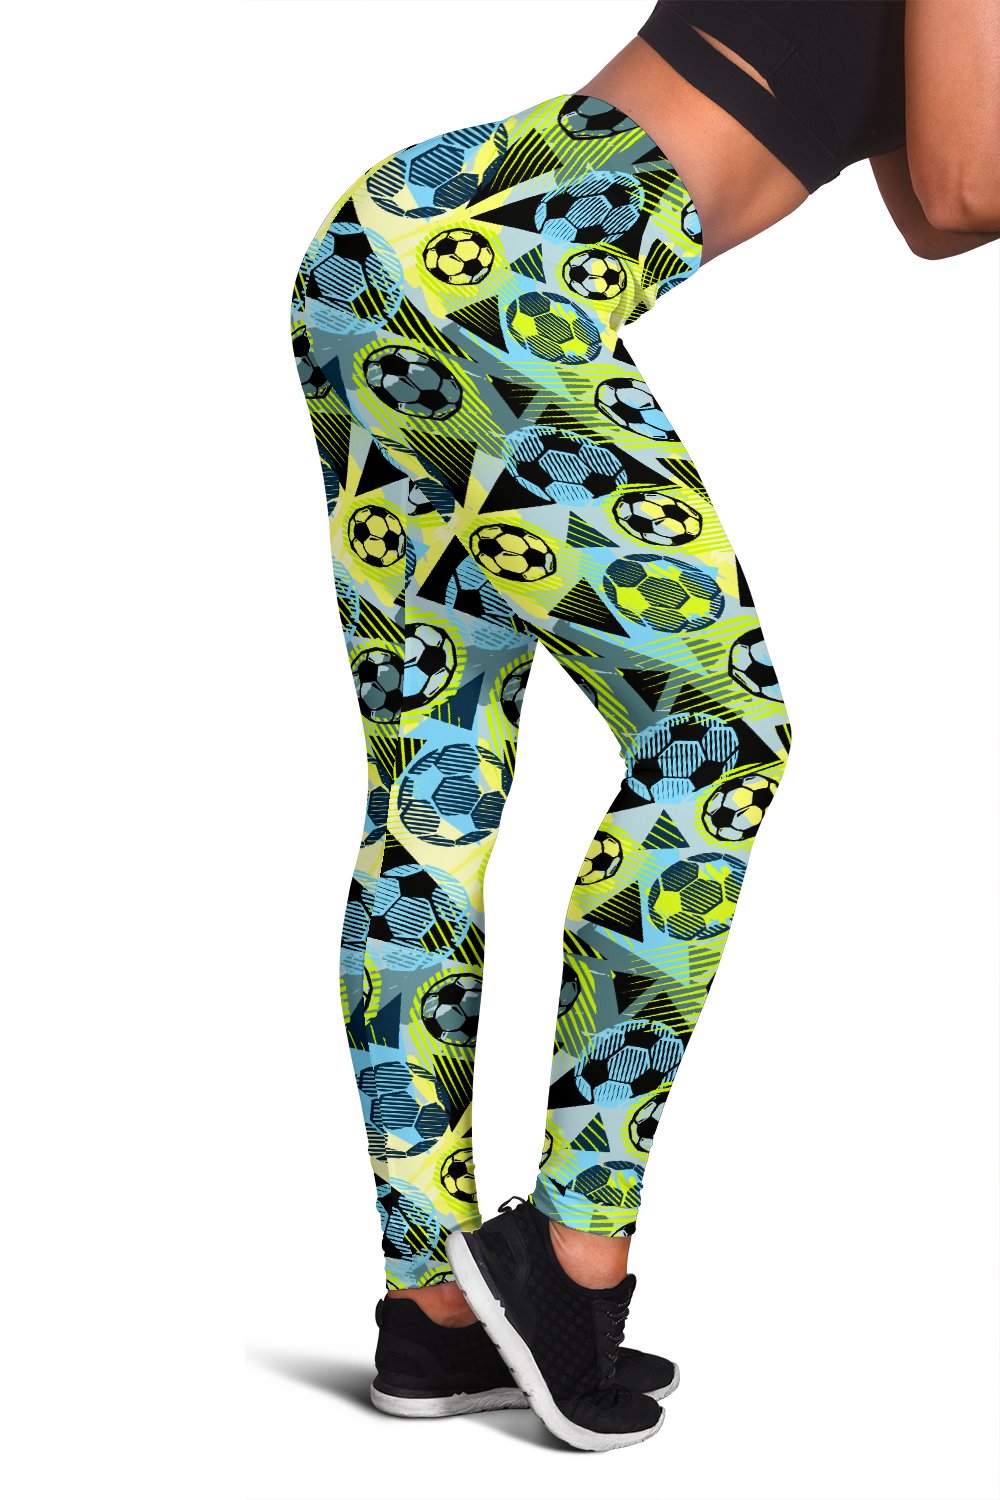 Soccer Ball Themed Print Design Women Leggings - JTAMIGO.COM